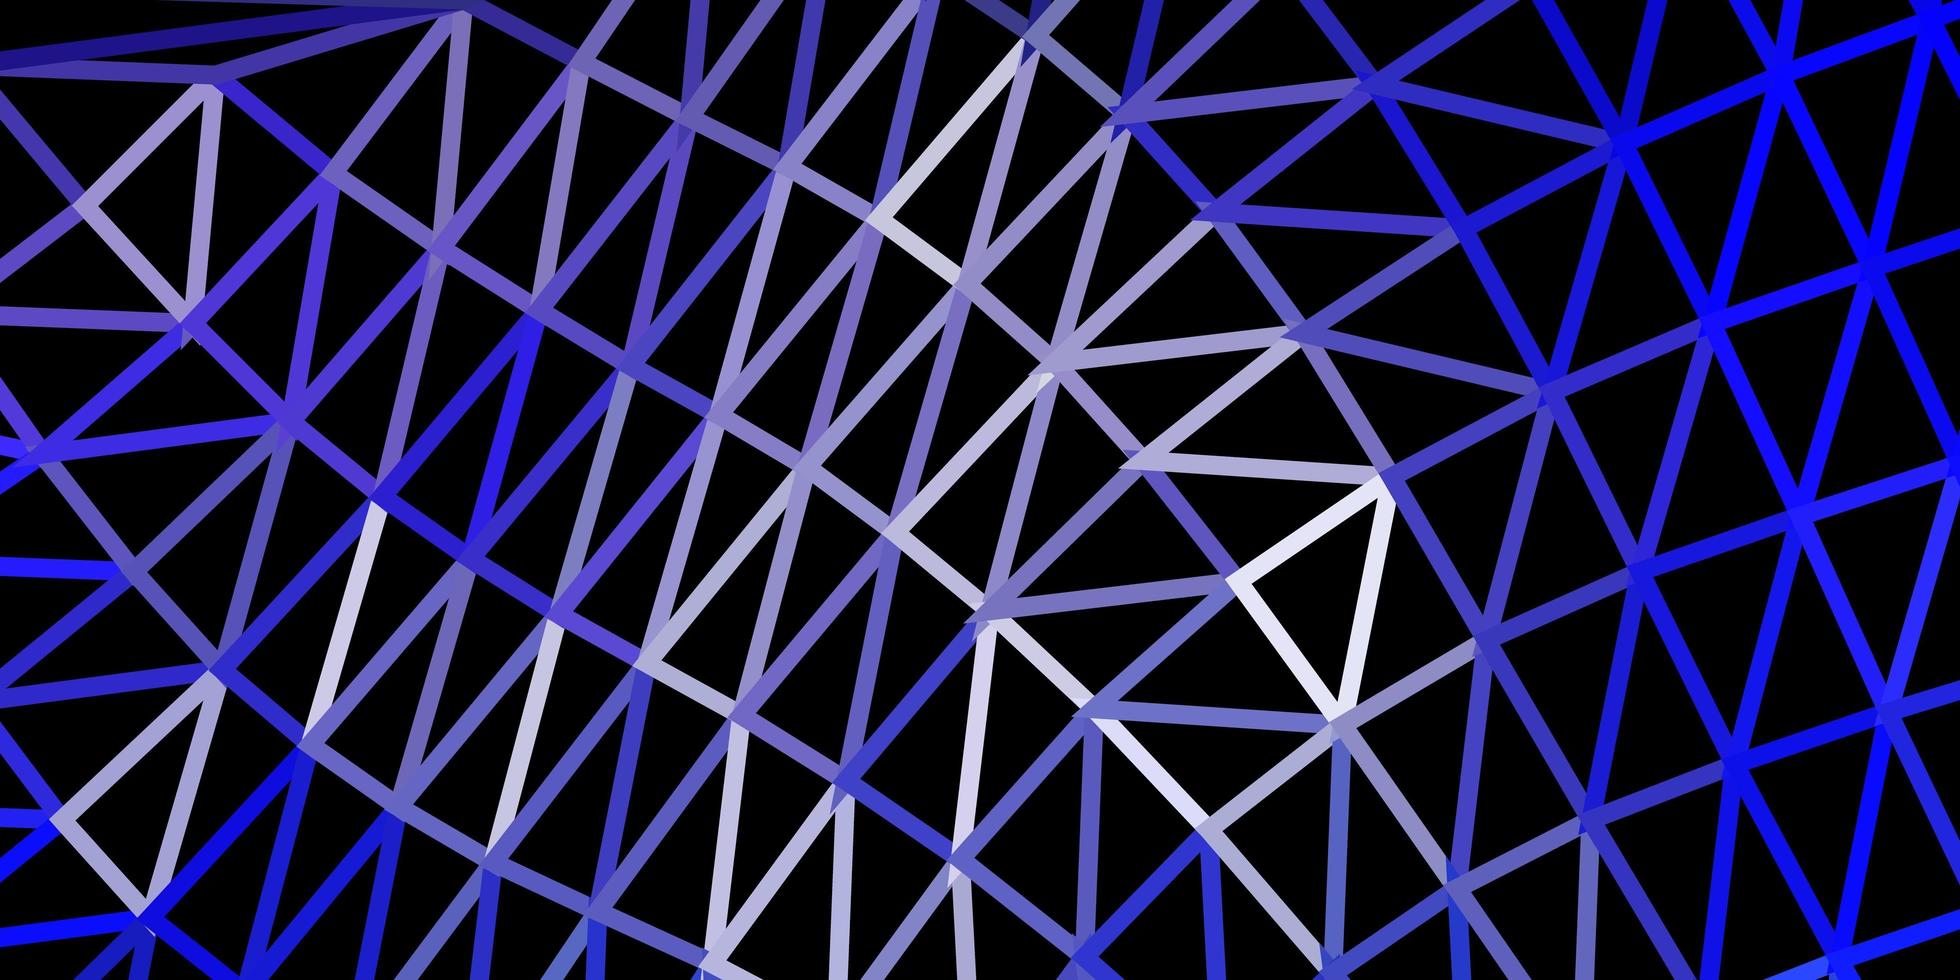 disegno poligonale geometrico di vettore viola chiaro.